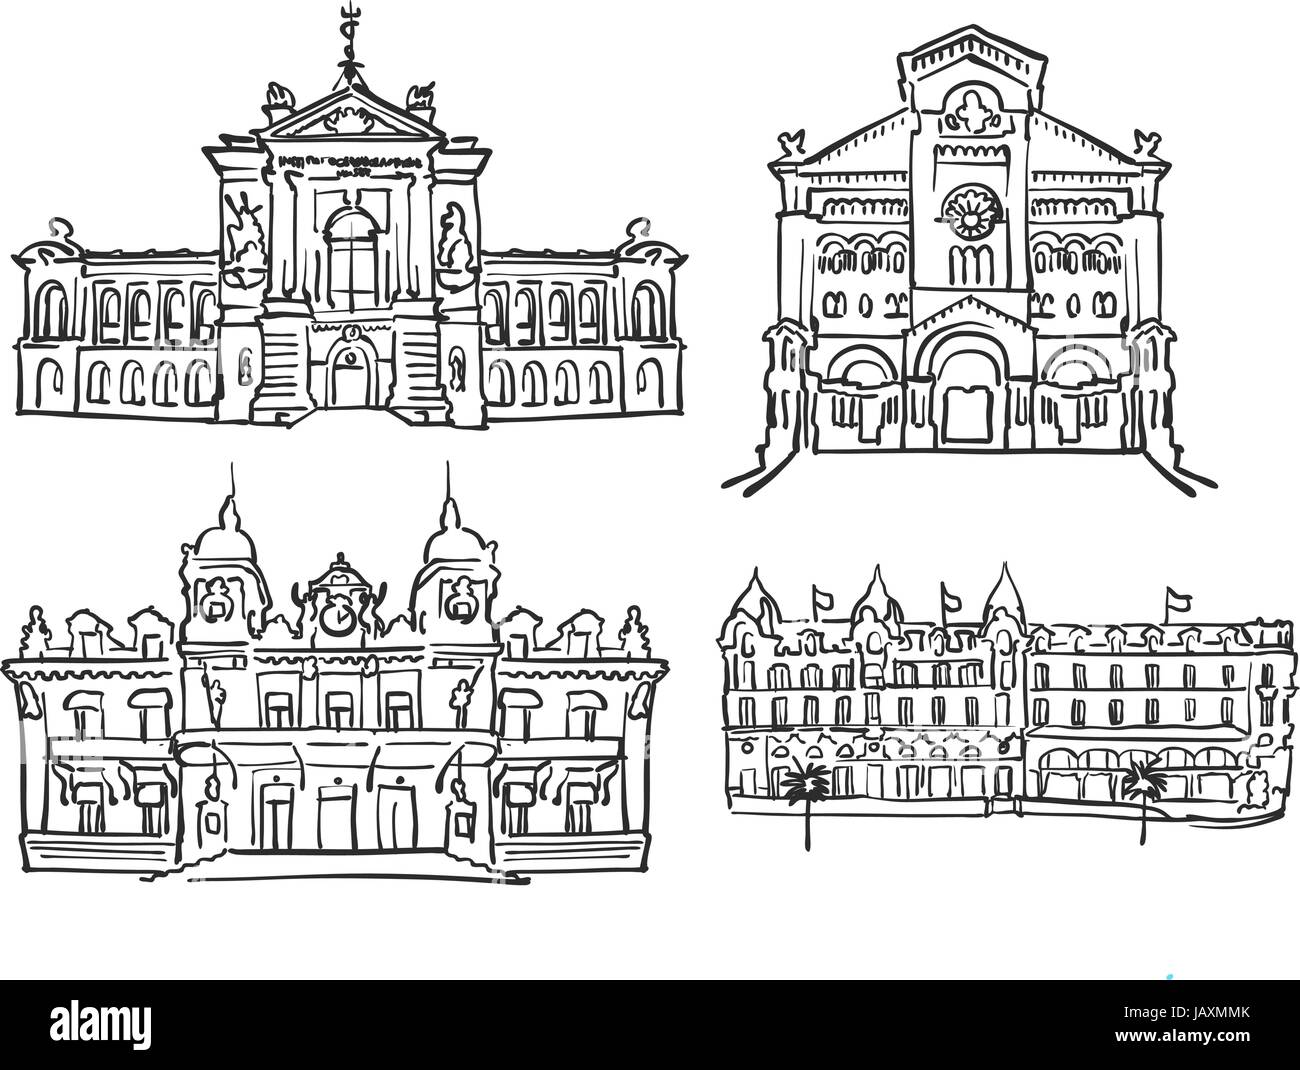 Monaco, berühmte Gebäude, Monochrom beschriebenen Reisen Sehenswürdigkeiten, skalierbare Vektor-Illustration Stock Vektor